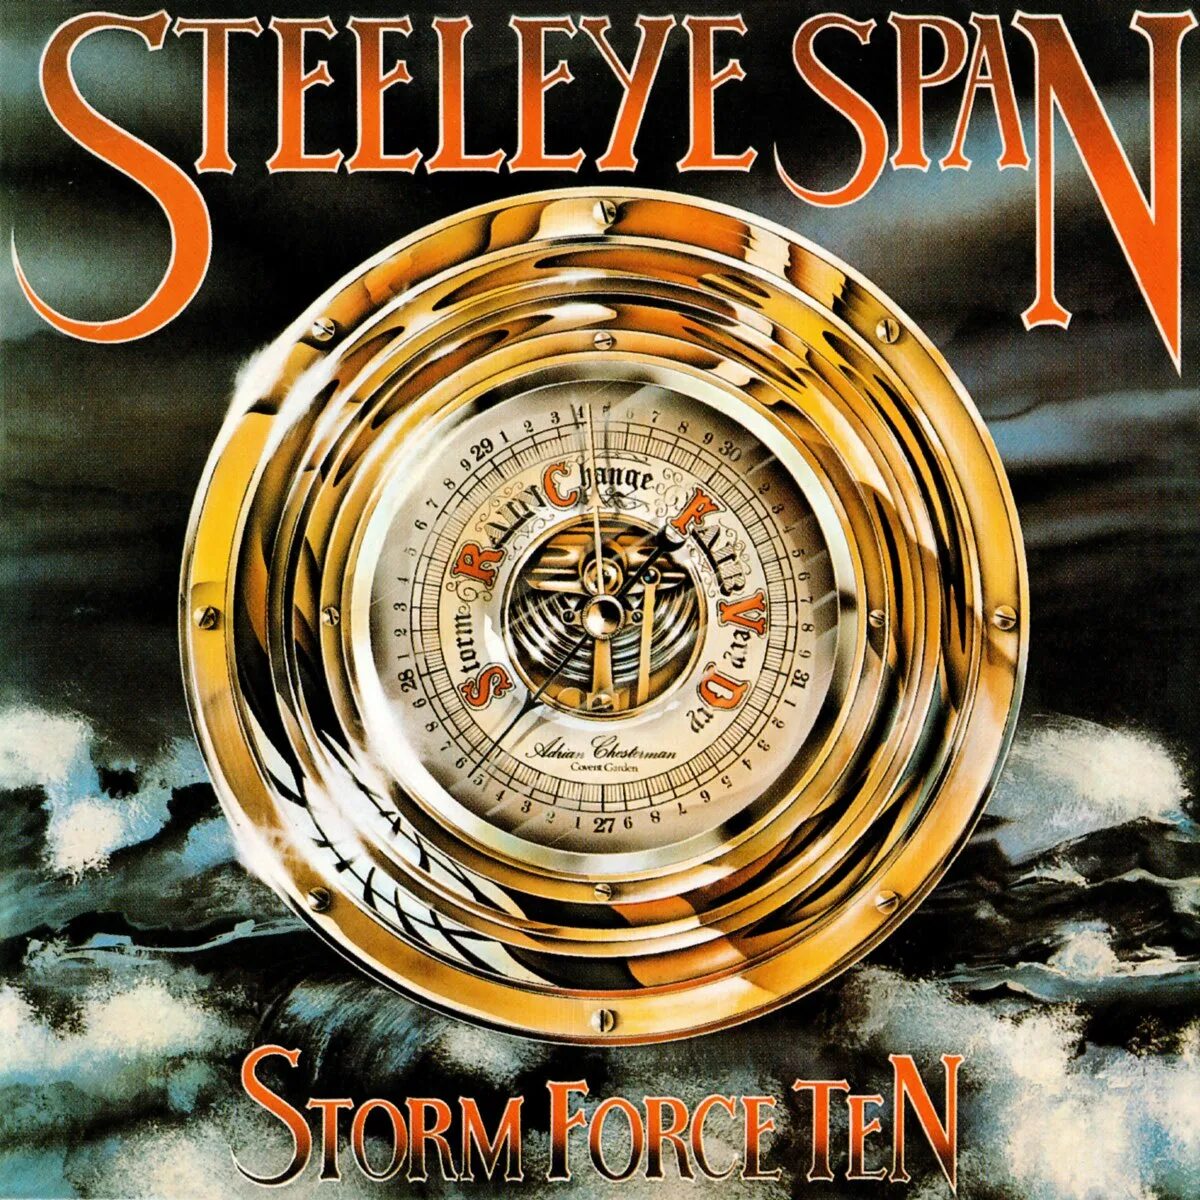 Steeleye span. Storm Force - age of Fear. Steeleye span "below the Salt".